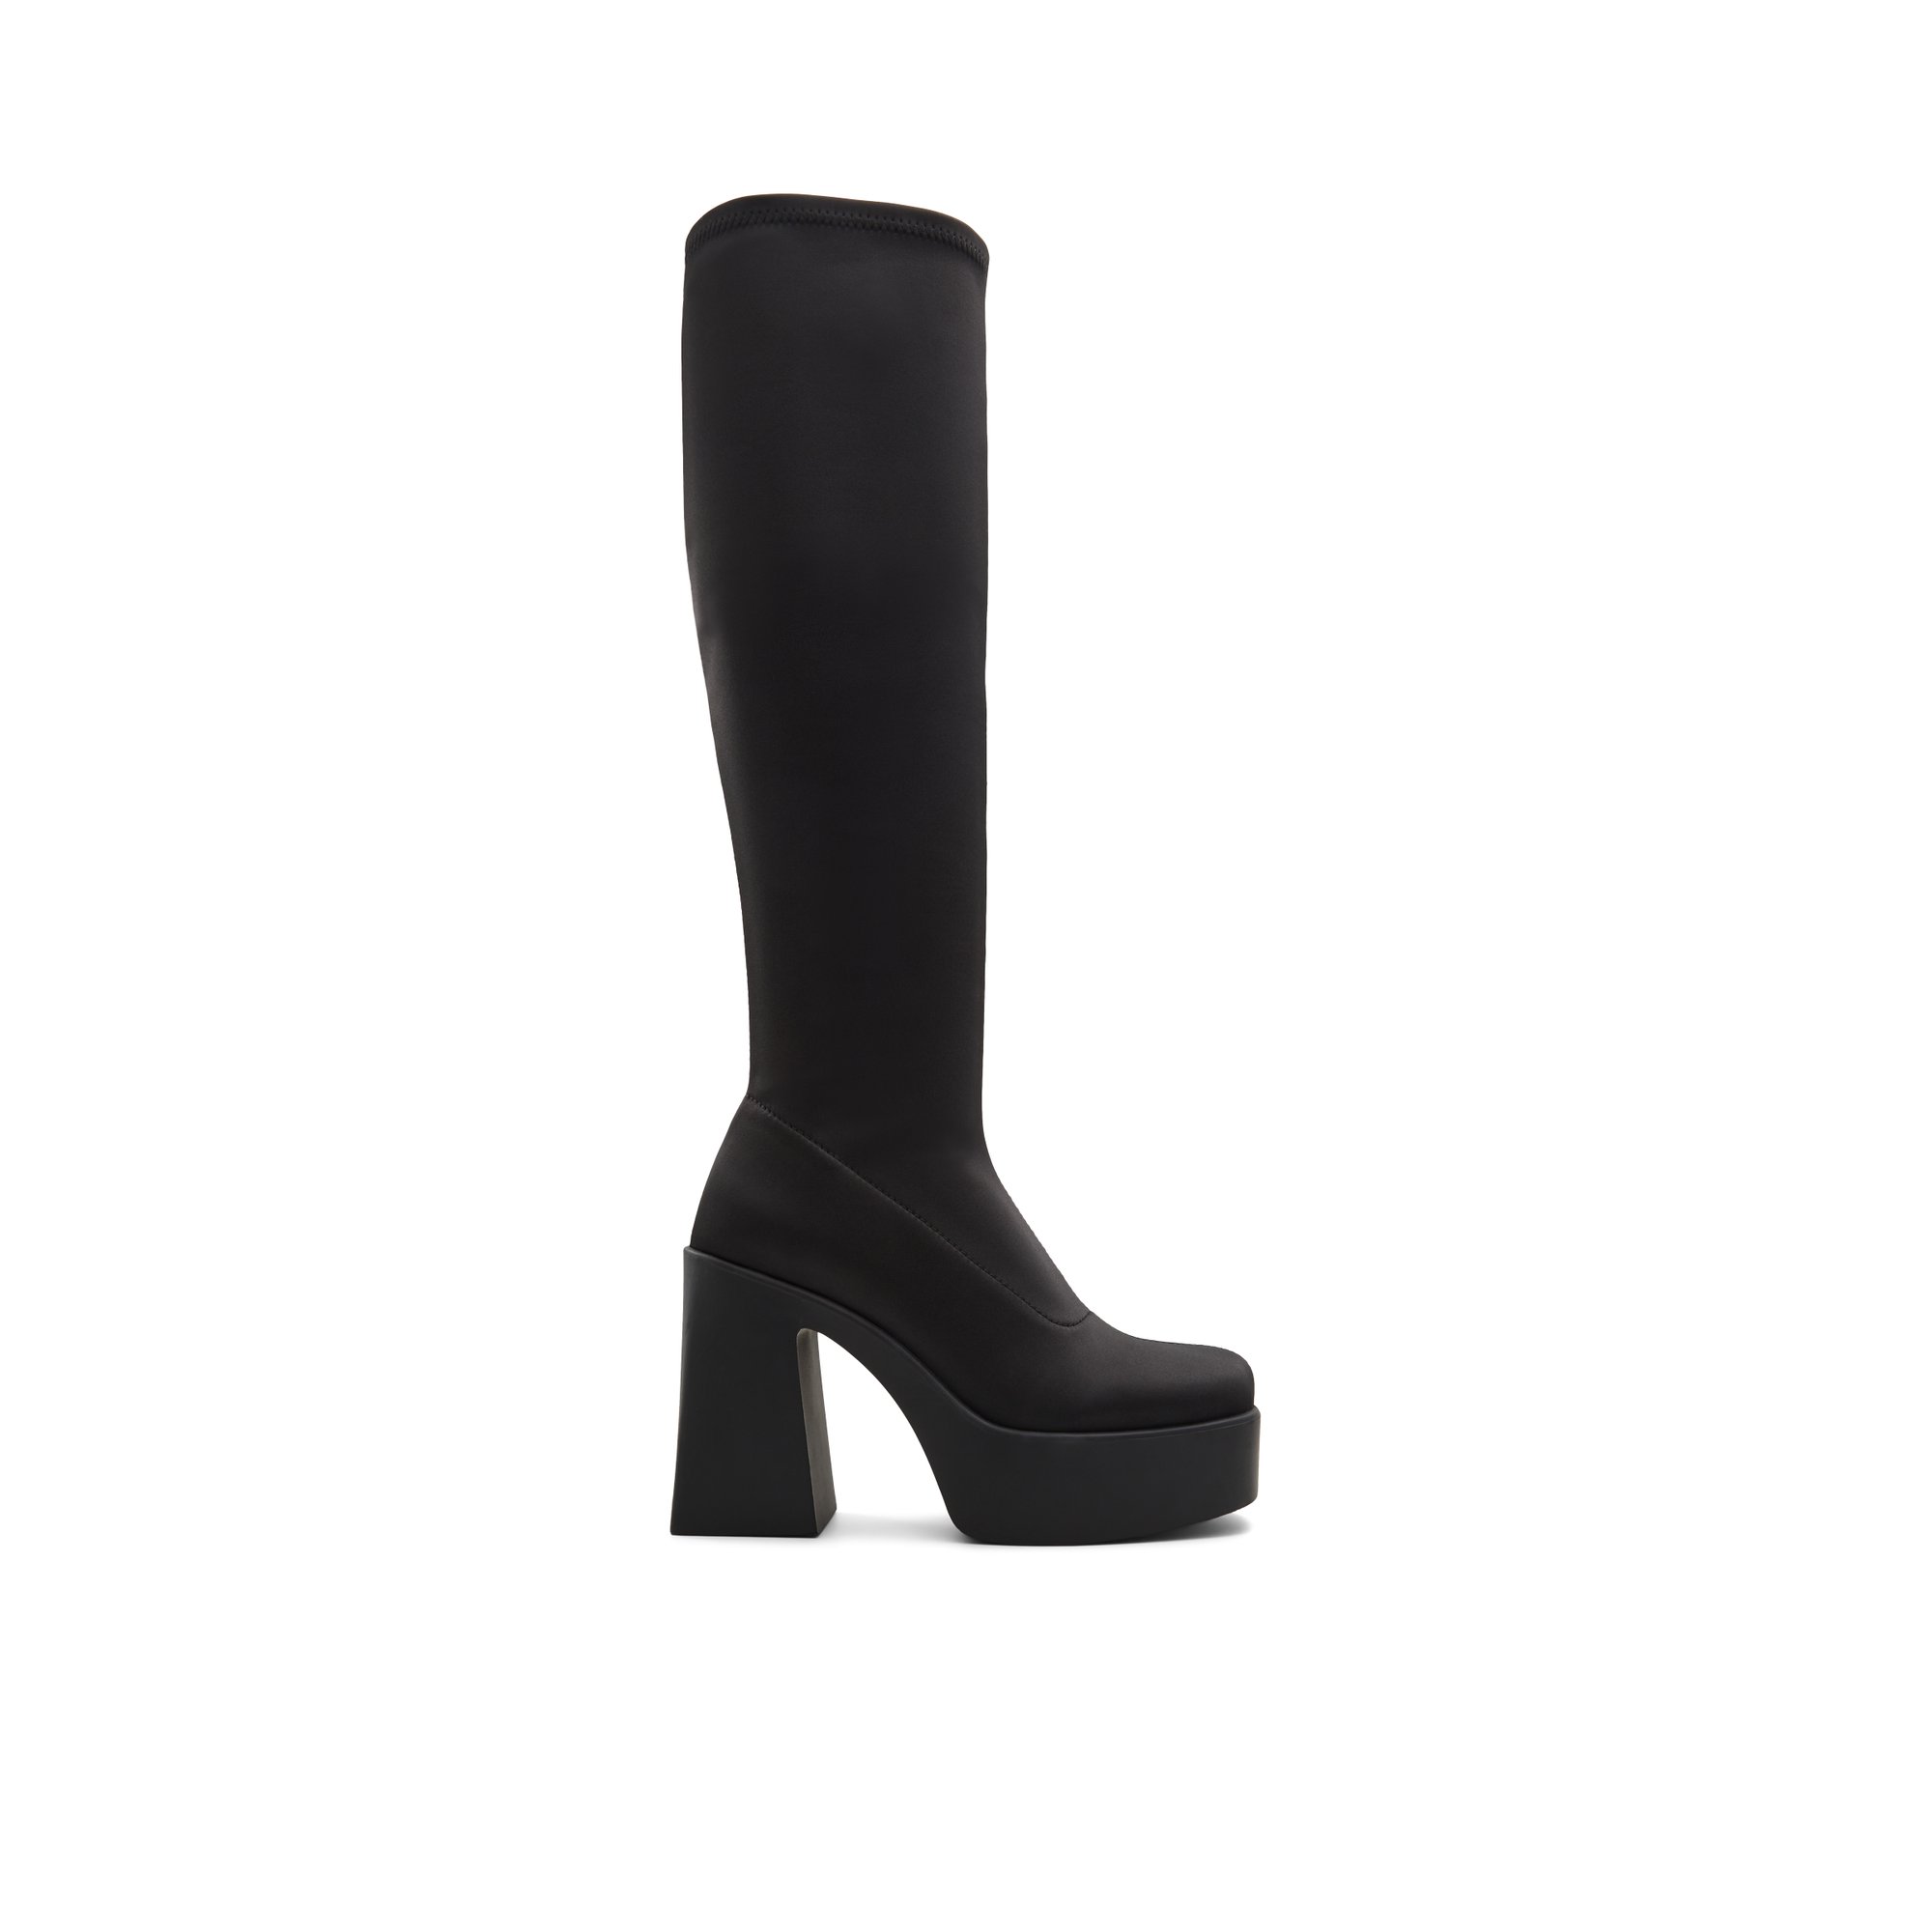 ALDO Moulin - Women's Dress Boot - Black